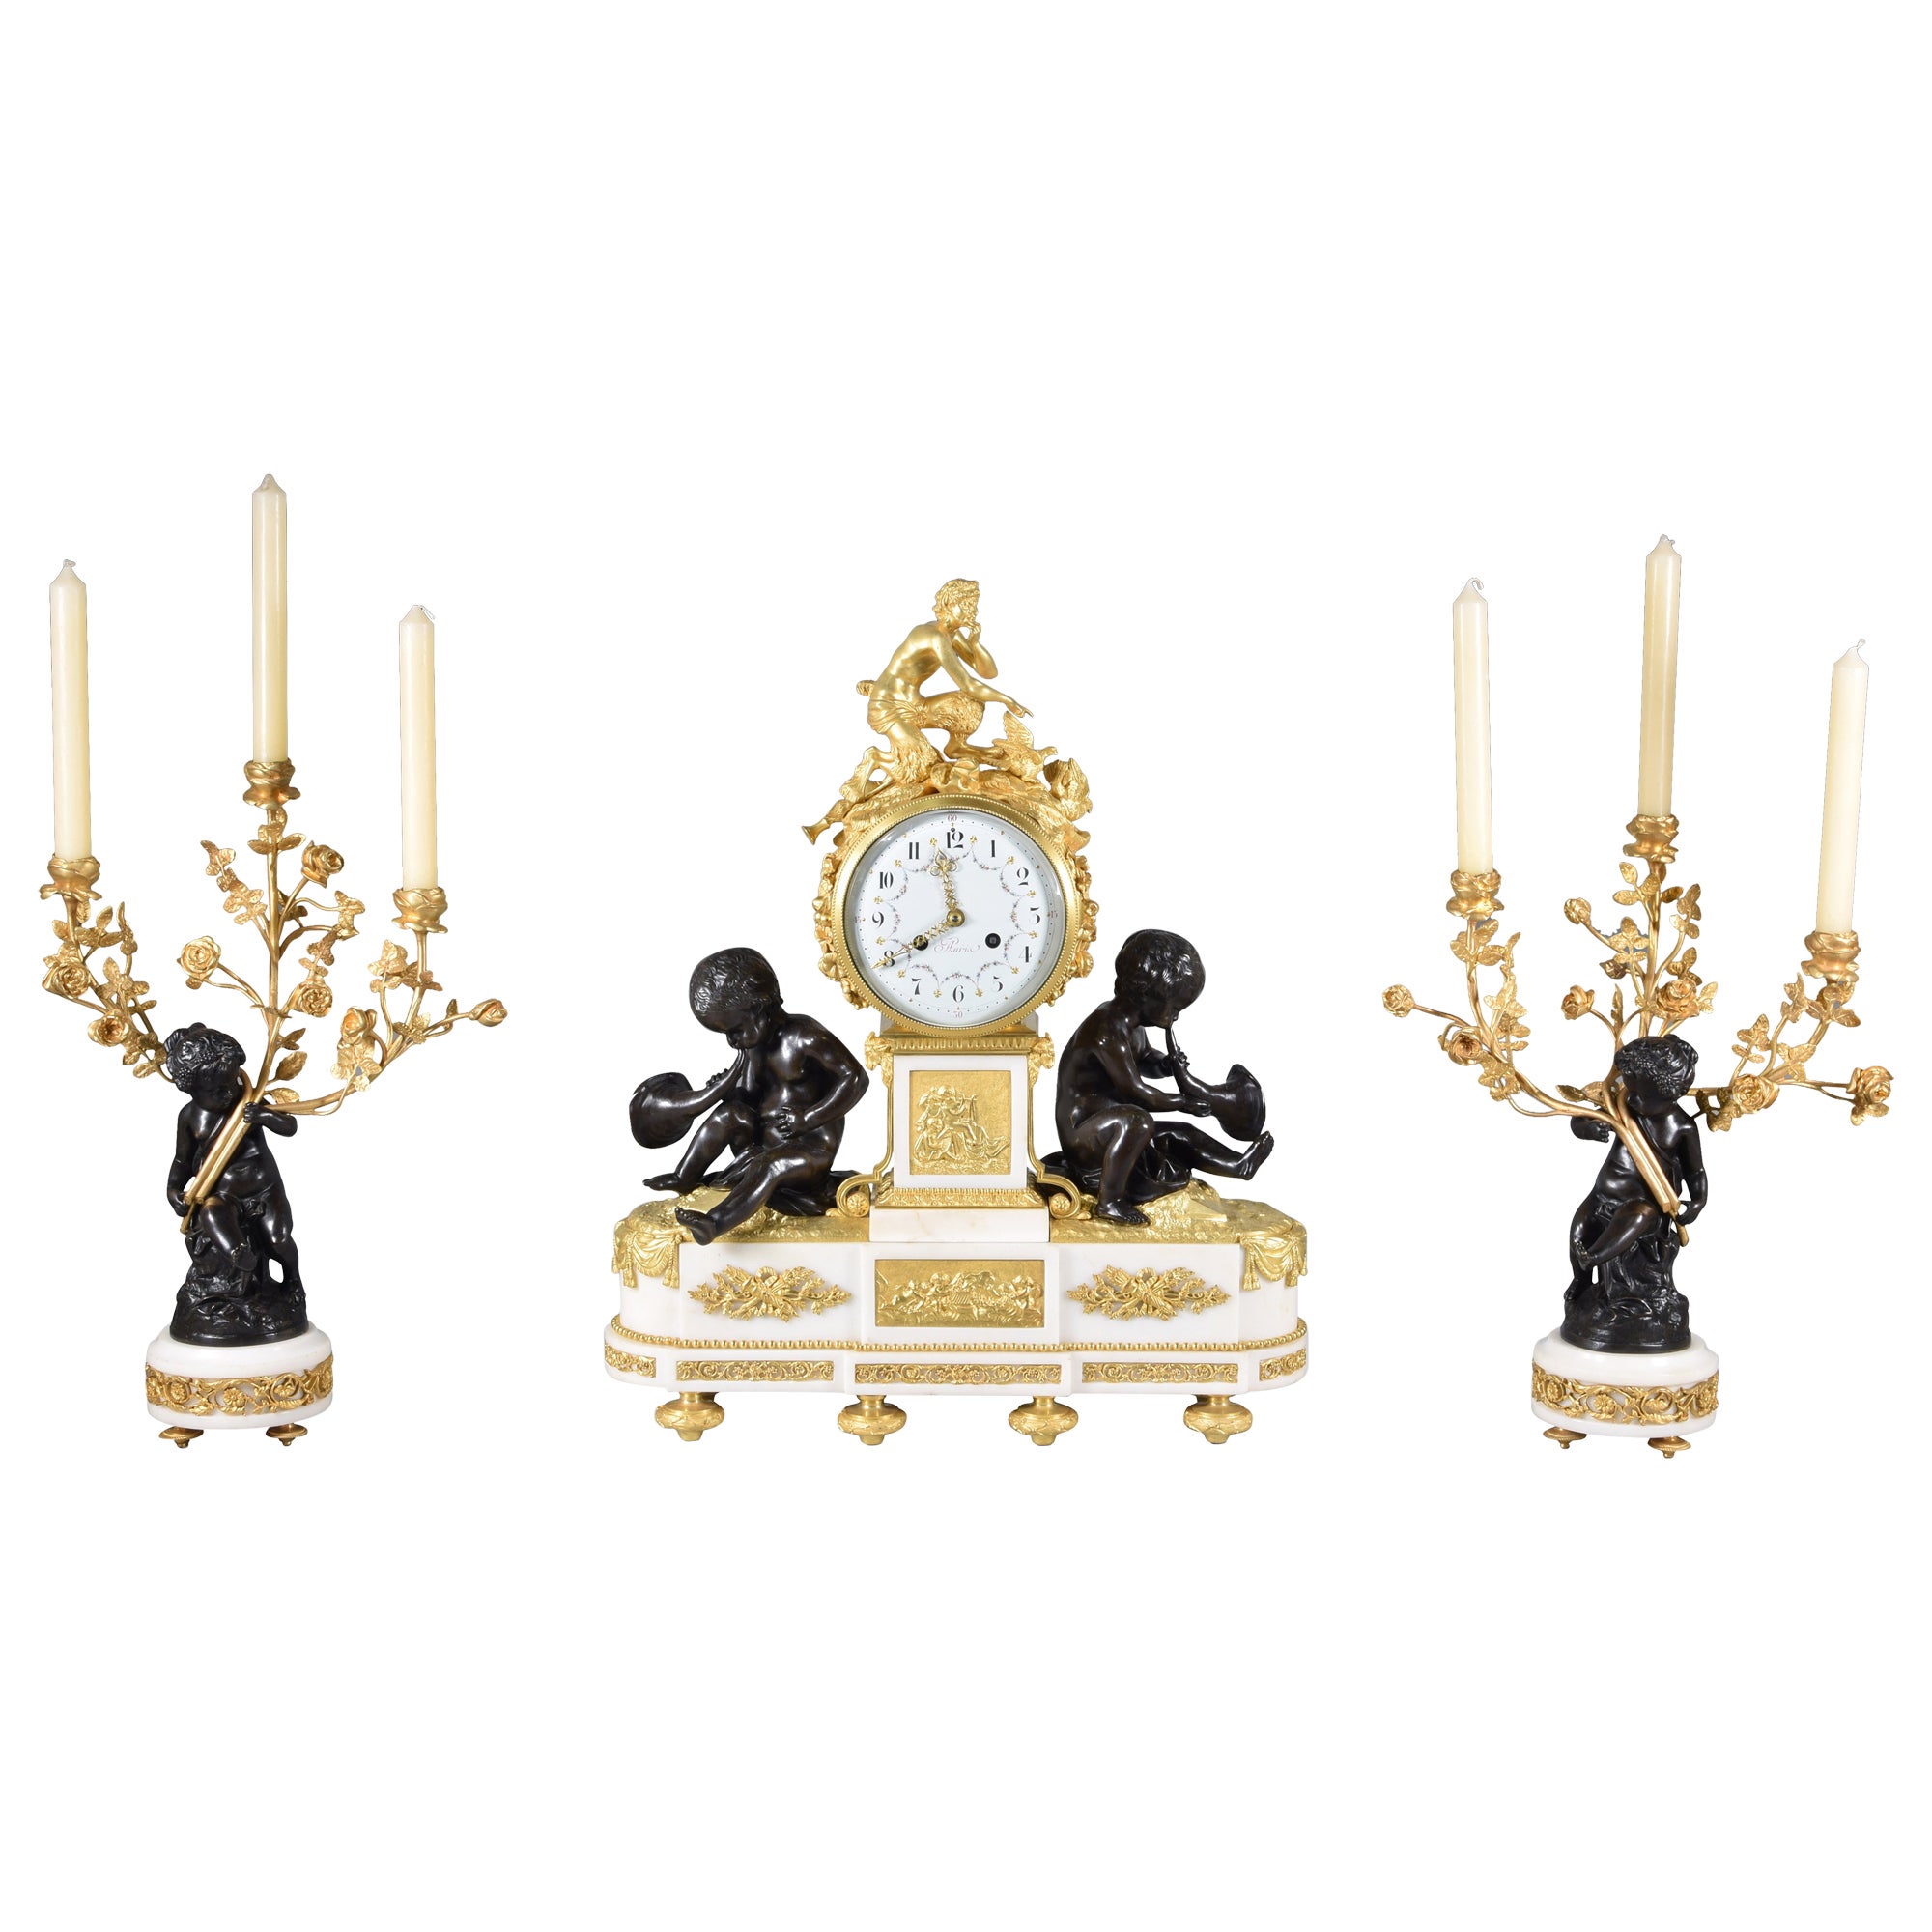 Horloge et candélabres Paris, France, seconde moitié du XIXe siècle.